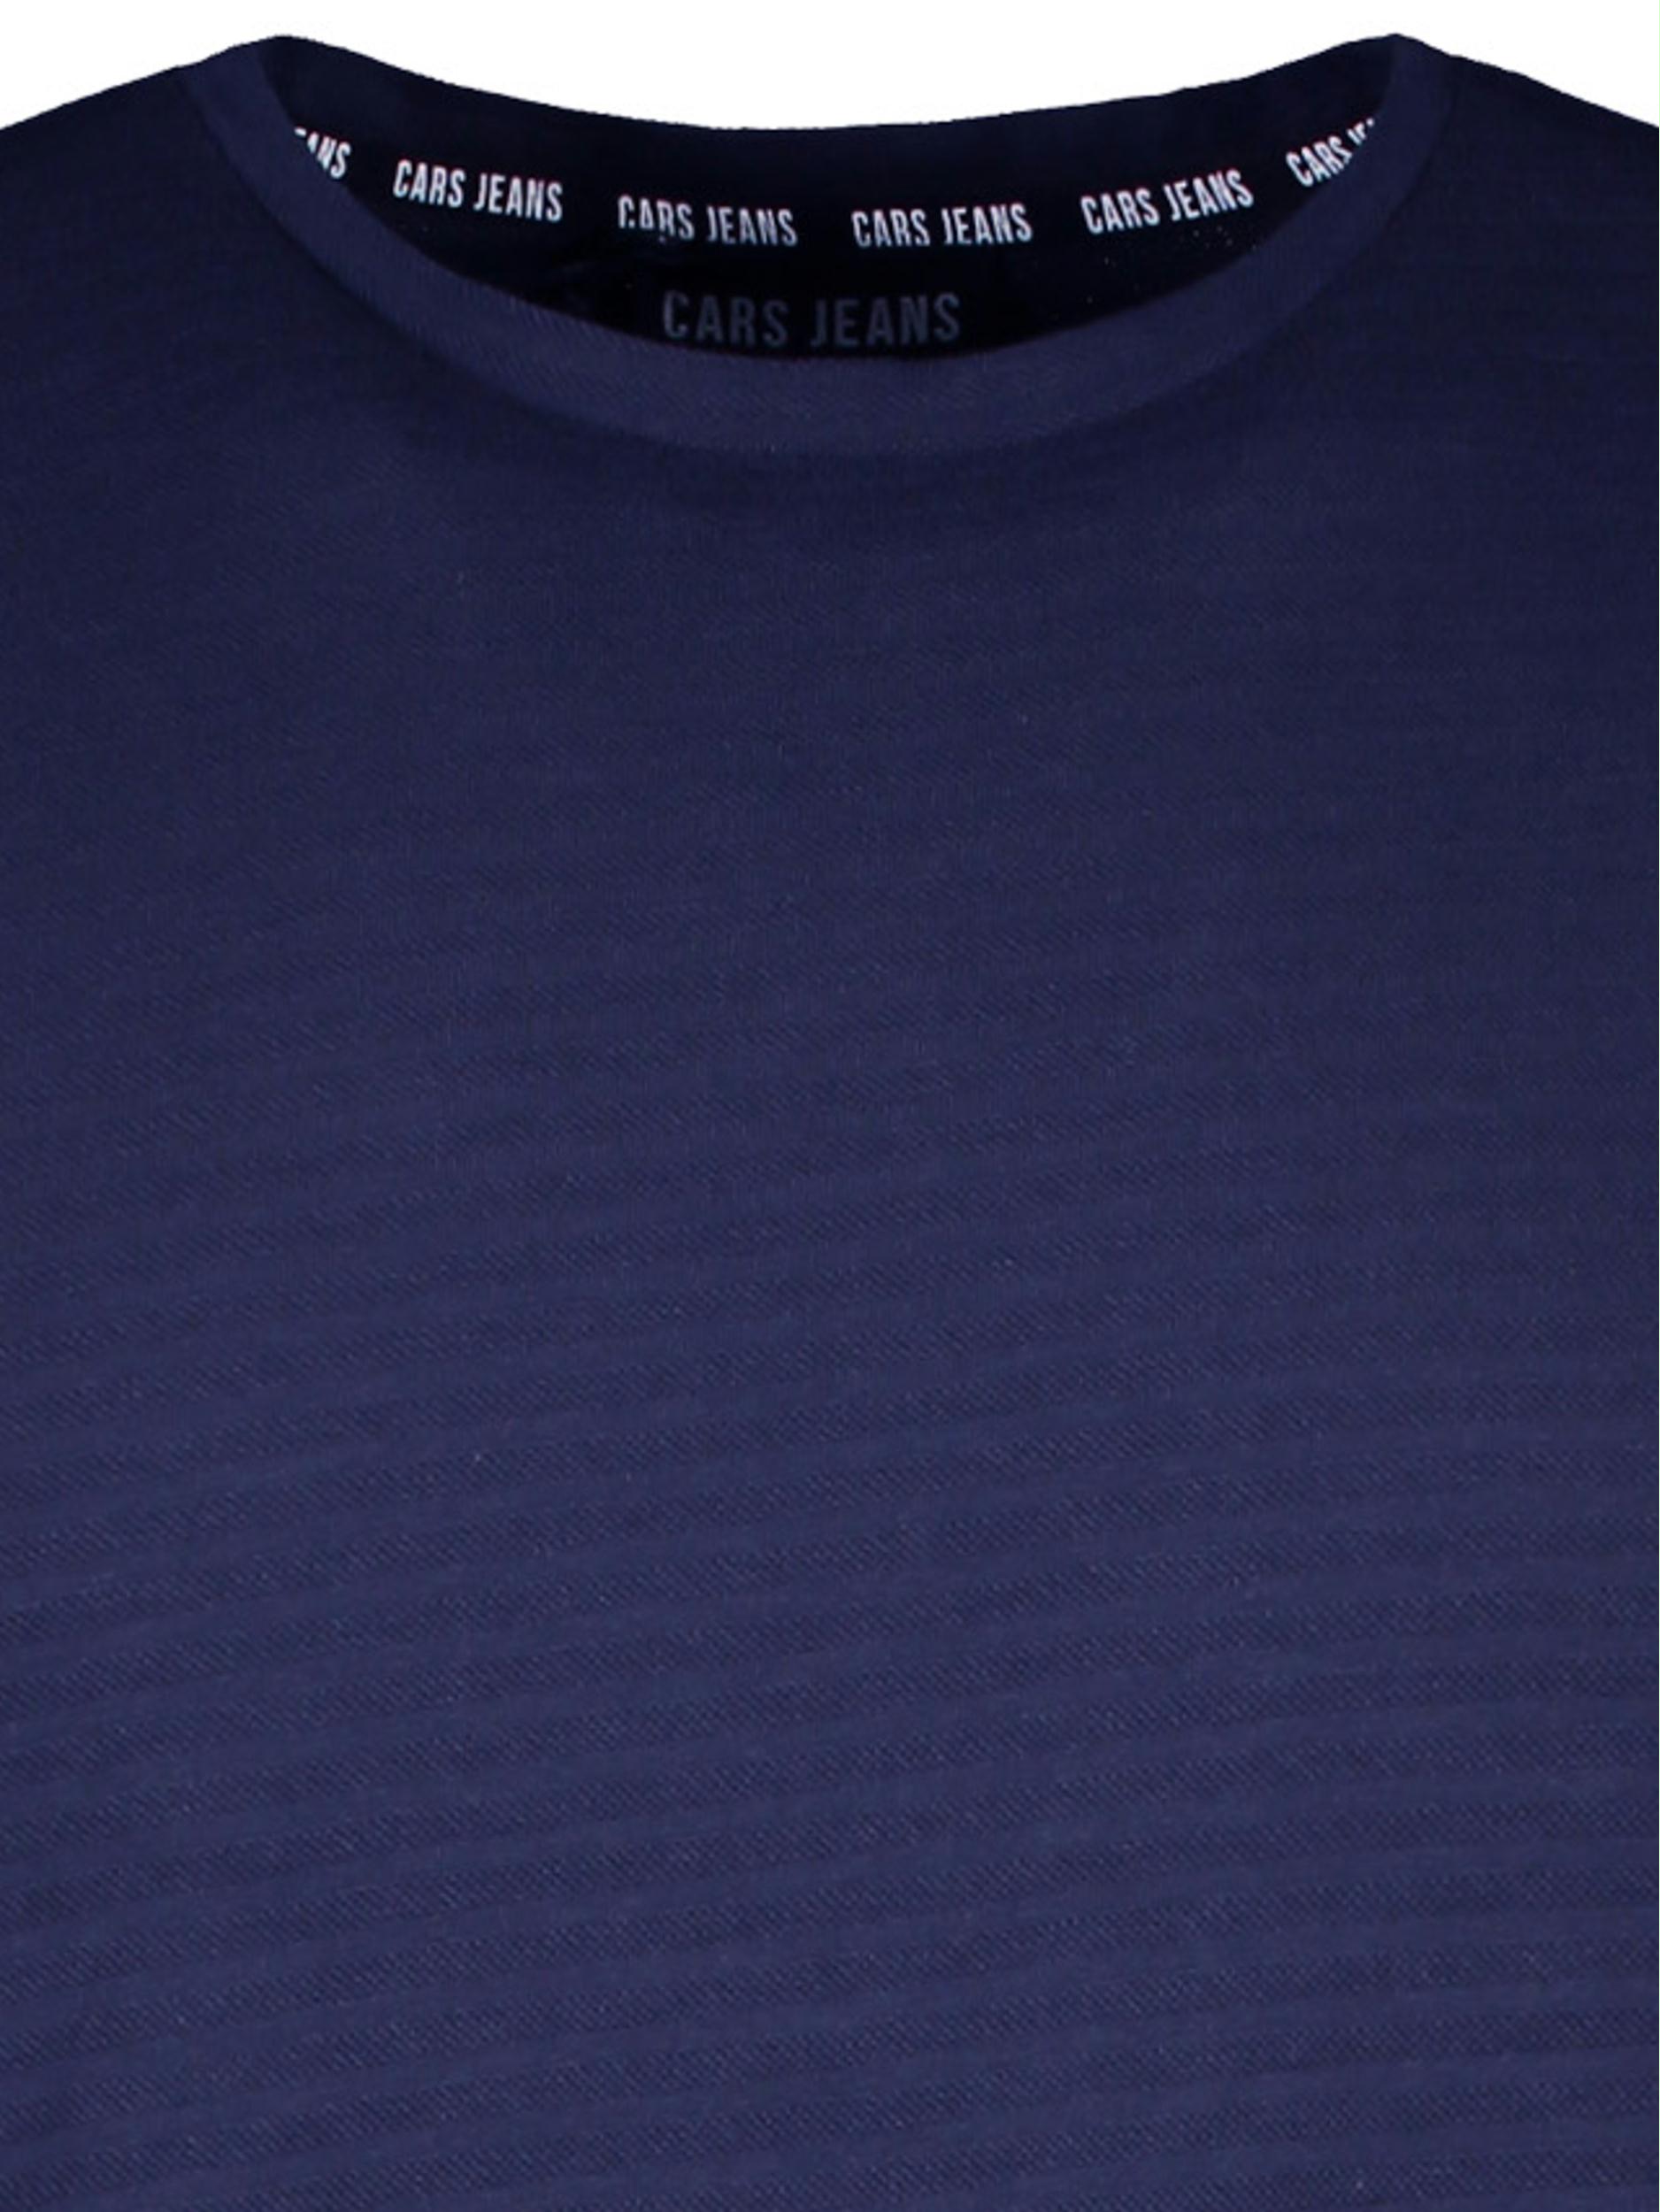 Cars Jeans T-shirt korte mouw Blauw Cherin 60397/12